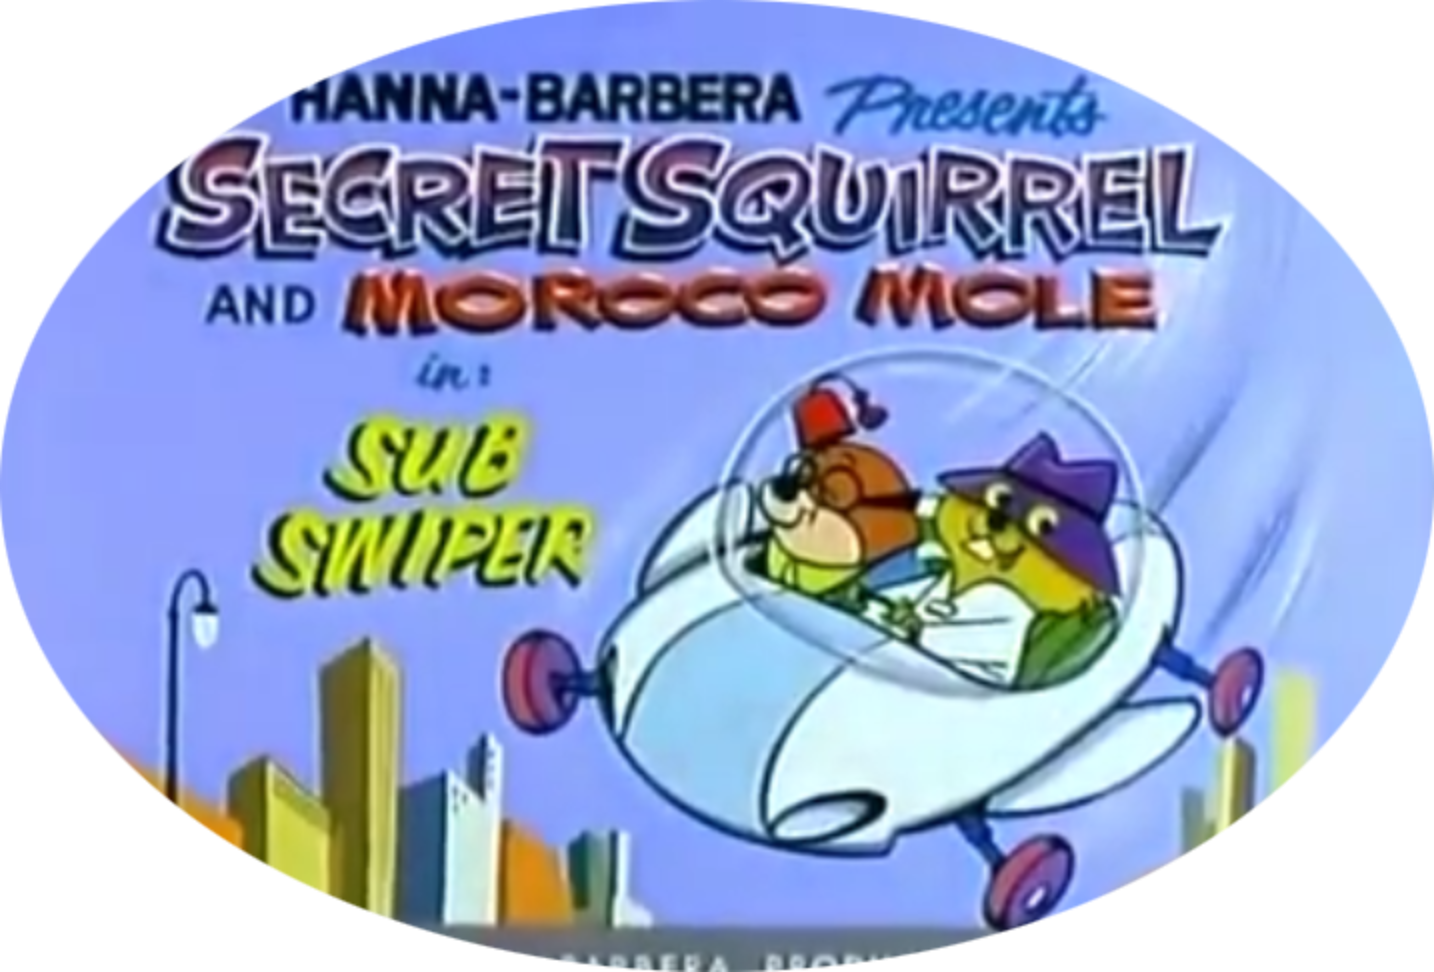 The Secret Squirrel Show (2 DVDs Box Set)